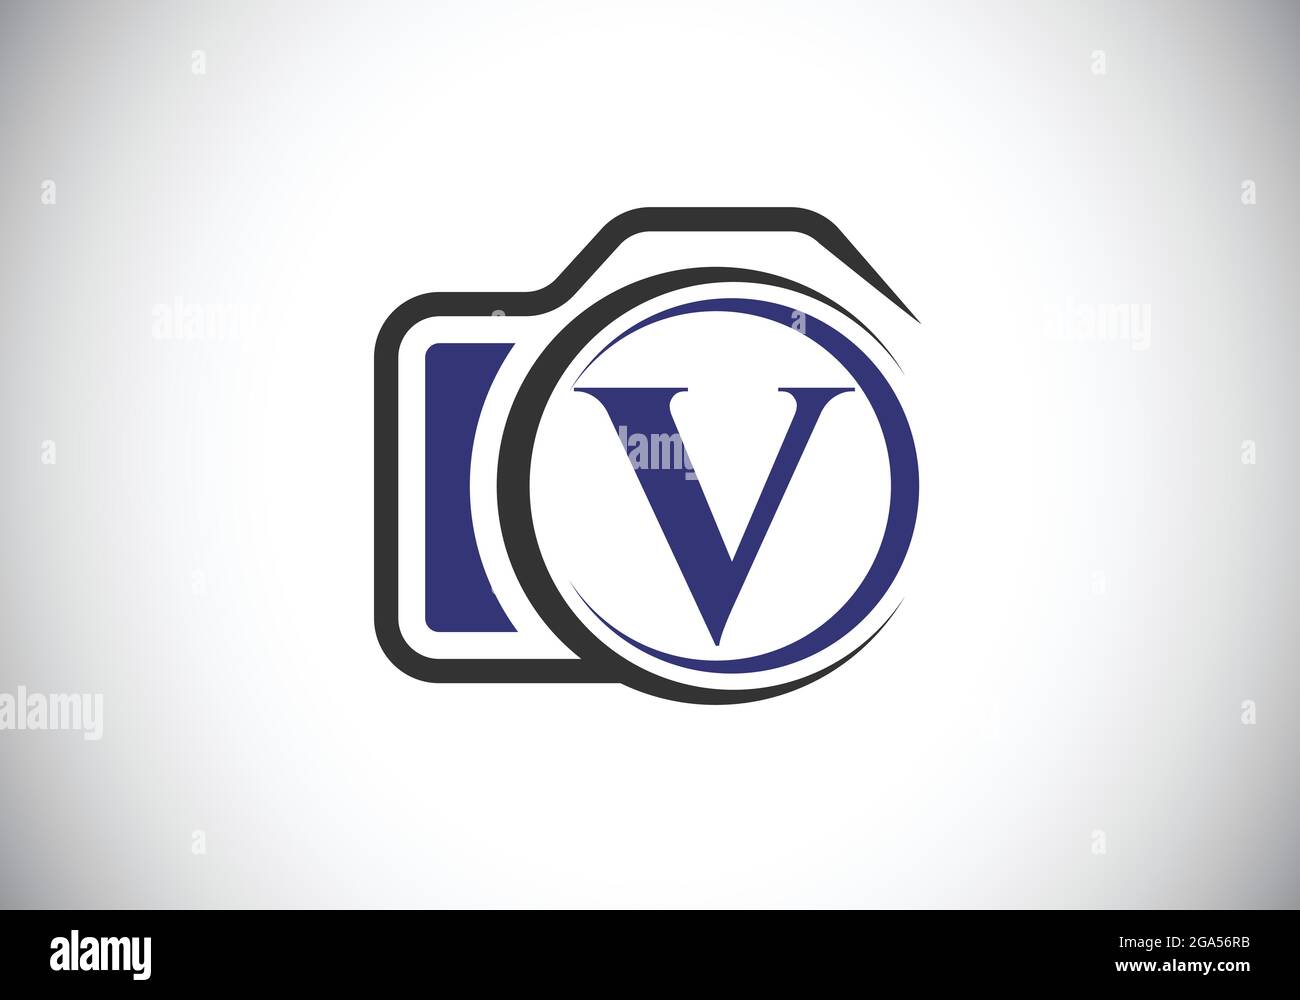 Lettera iniziale del monogramma V con l'icona di una telecamera. Immagine vettoriale del logo fotografico. Design moderno del logo per il settore della fotografia e l'azienda Illustrazione Vettoriale